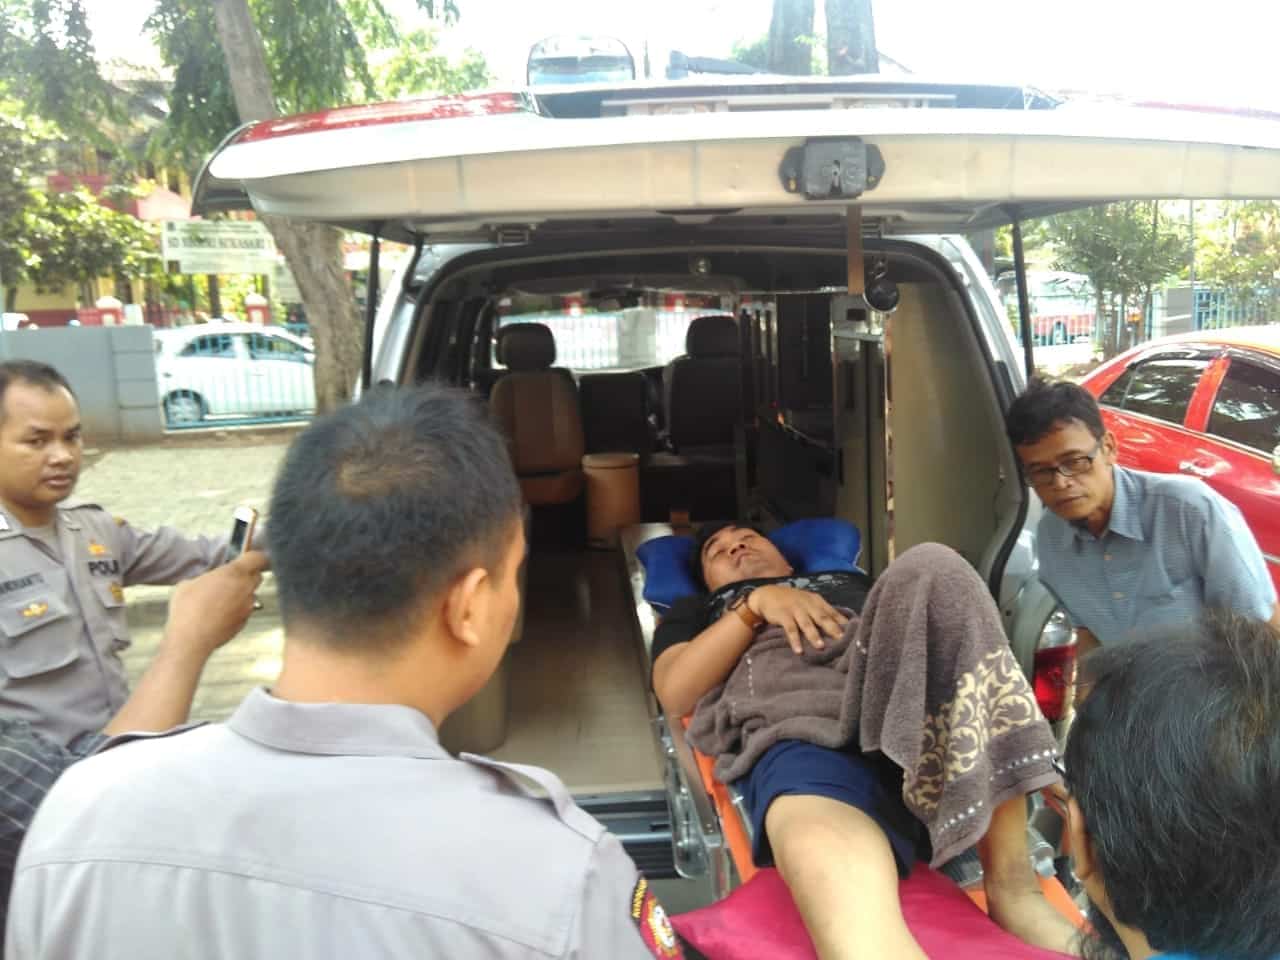 Kelelahan, Ketua PPK Tangerang Dilarikan ke Rumah Sakit